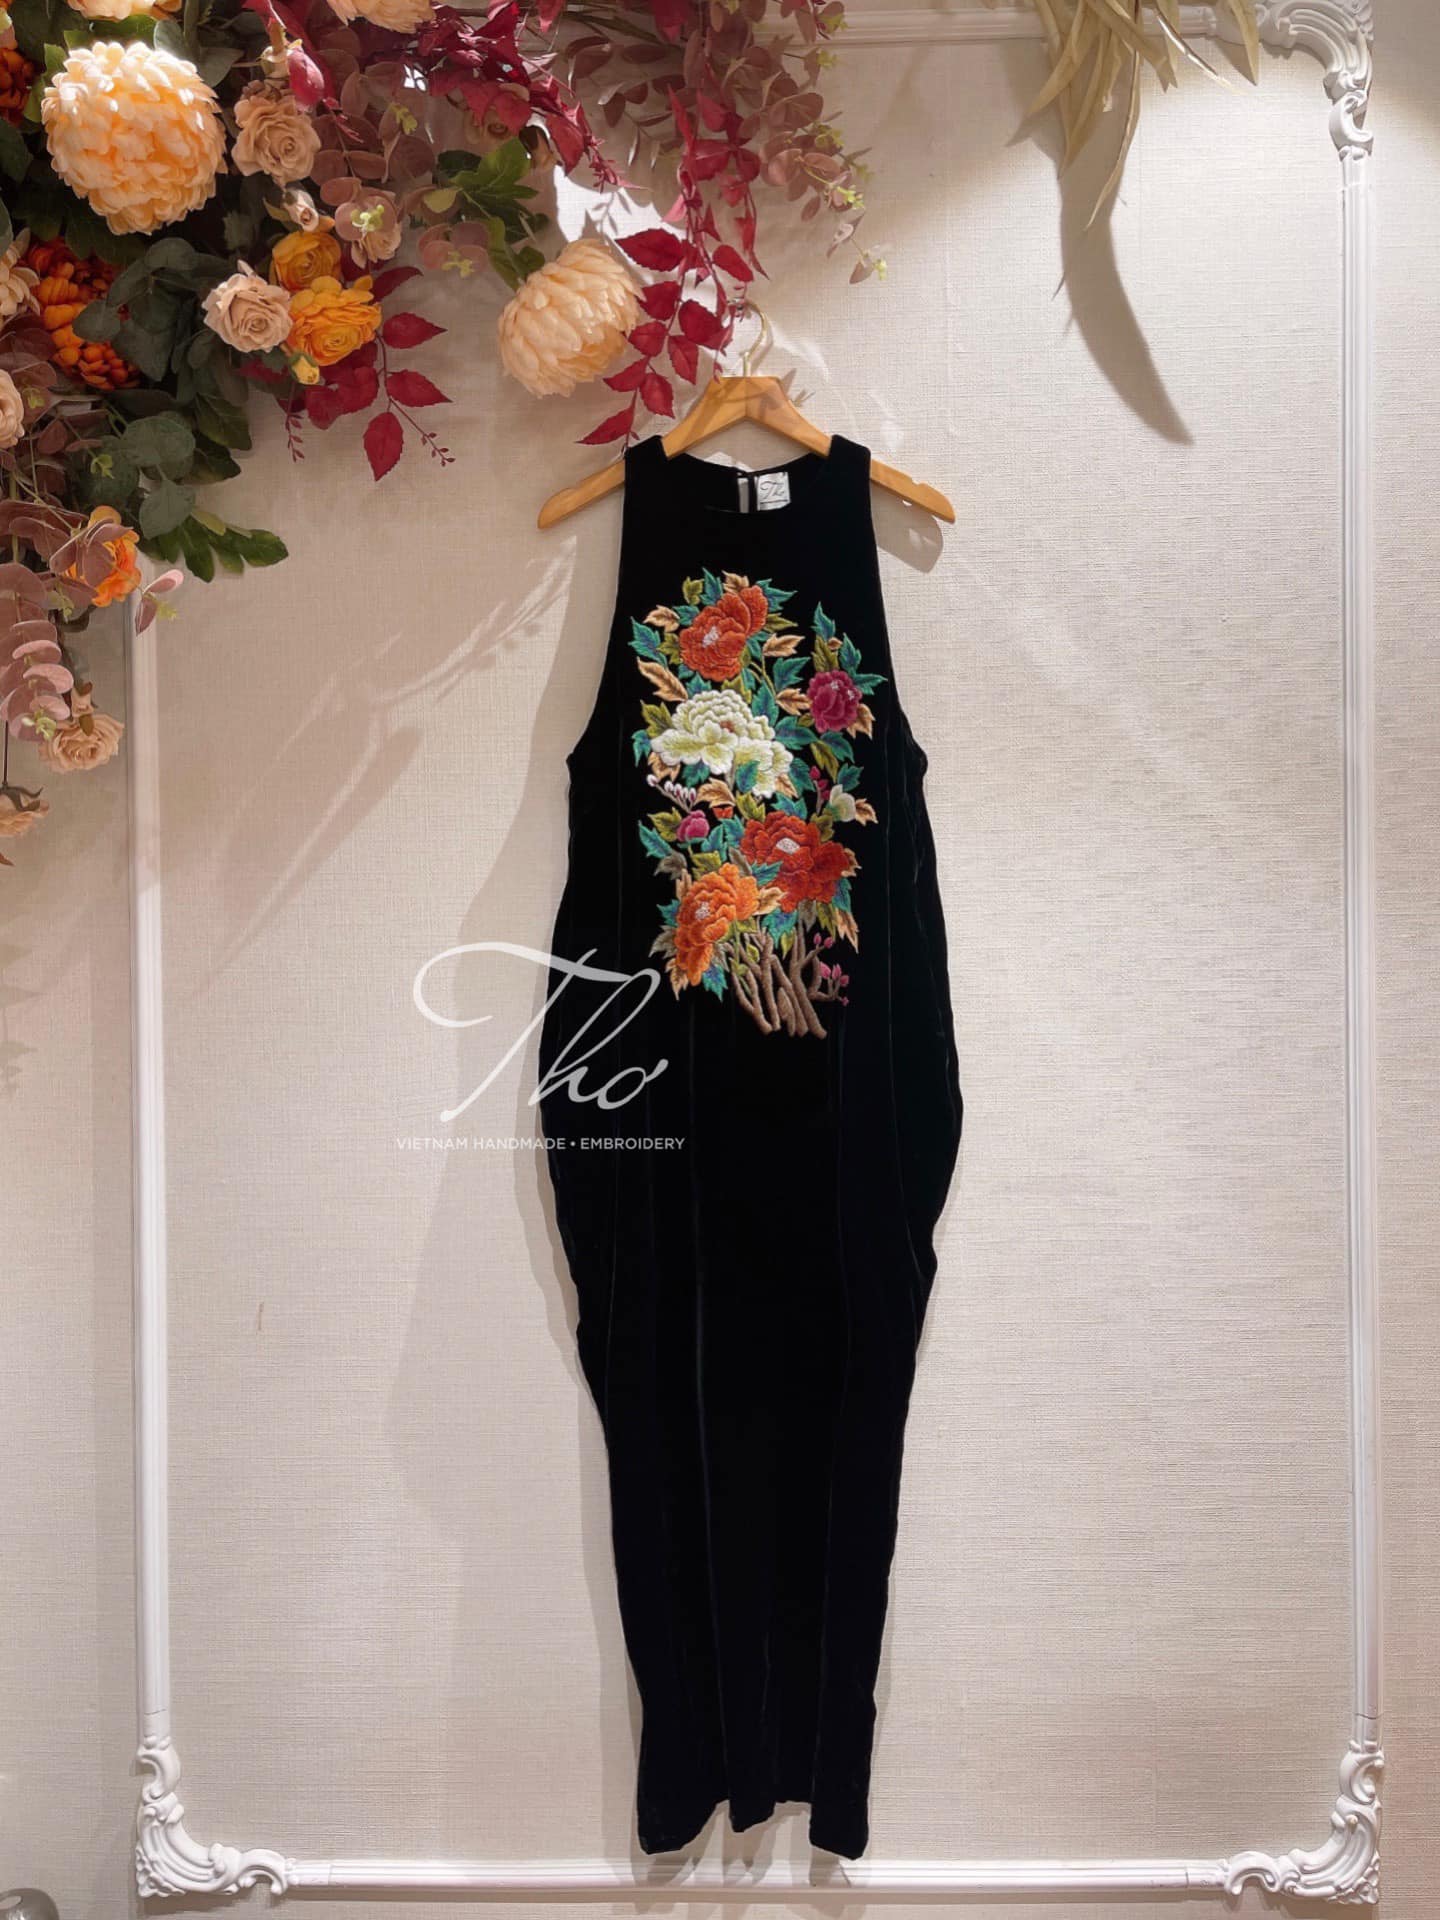 Tuyển chọn 999 mẫu váy yếm nhung được yêu thích nhất!